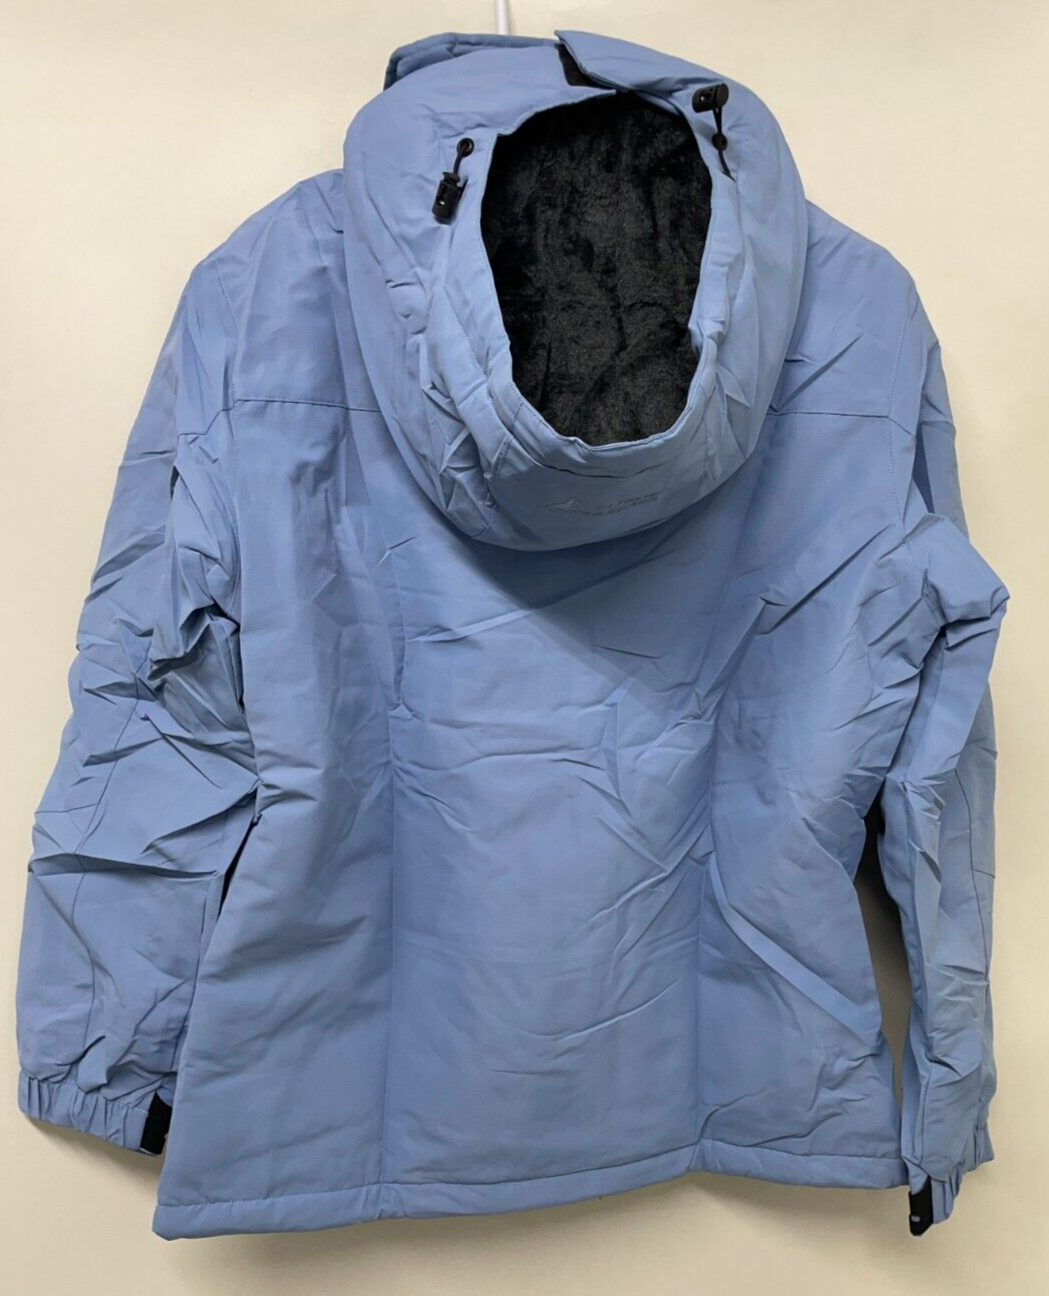 Moerdeng Womens S Waterproof Ski Jacket Blue Hooded Winter Snow Coat LIN816B